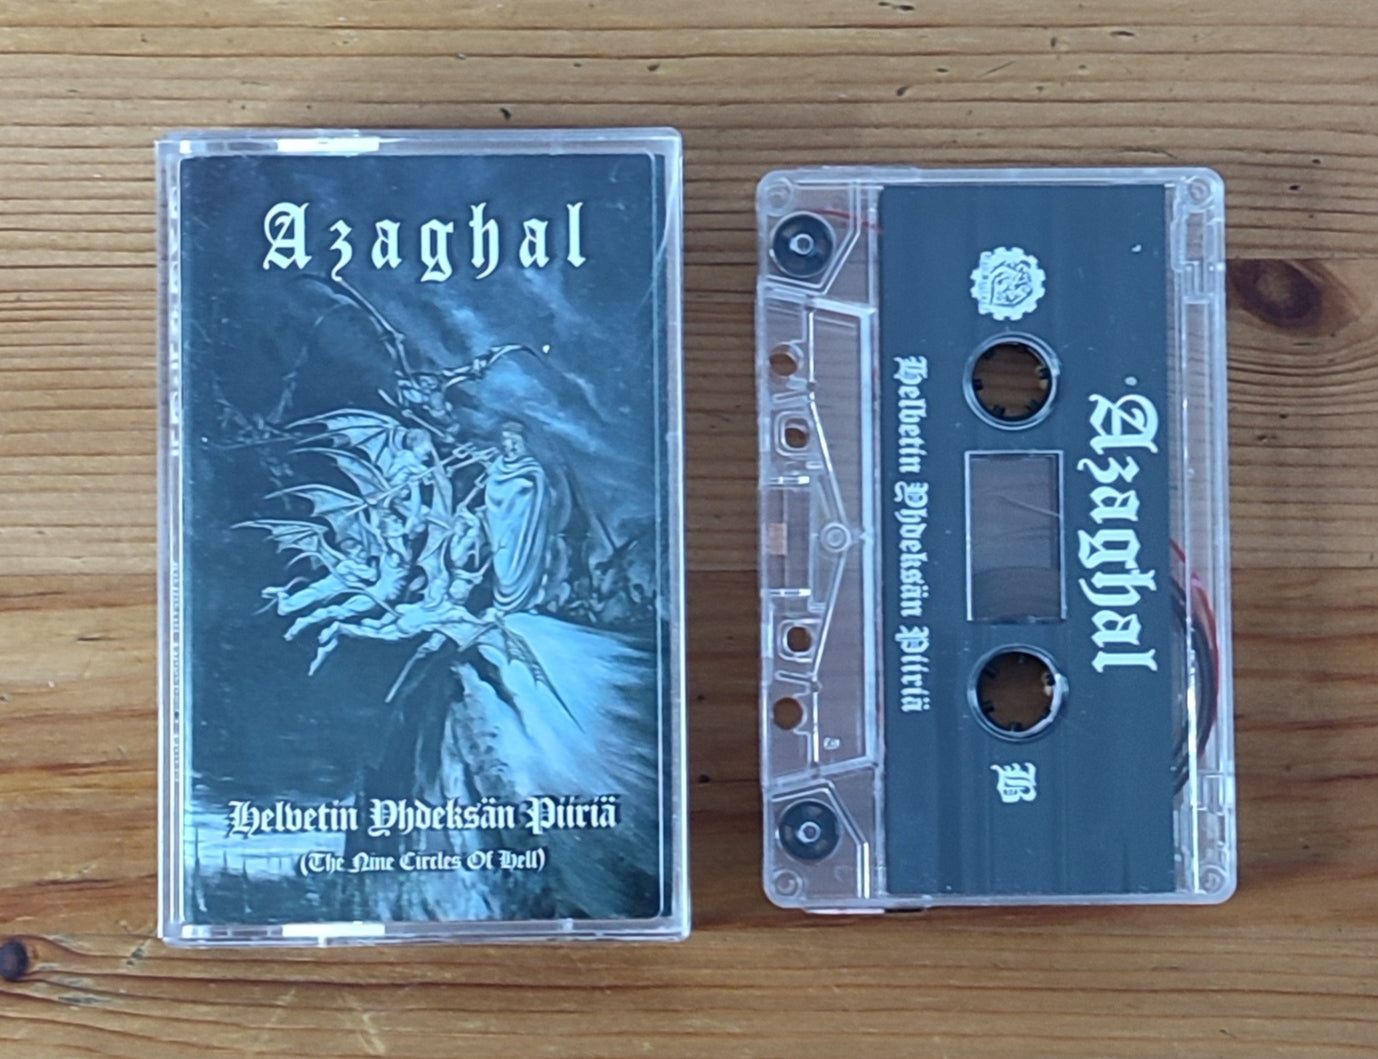 Azaghal (Fin) "Helvetin Yhdeksän Piiriä" - Pro Tape *NEW IN STOCK*